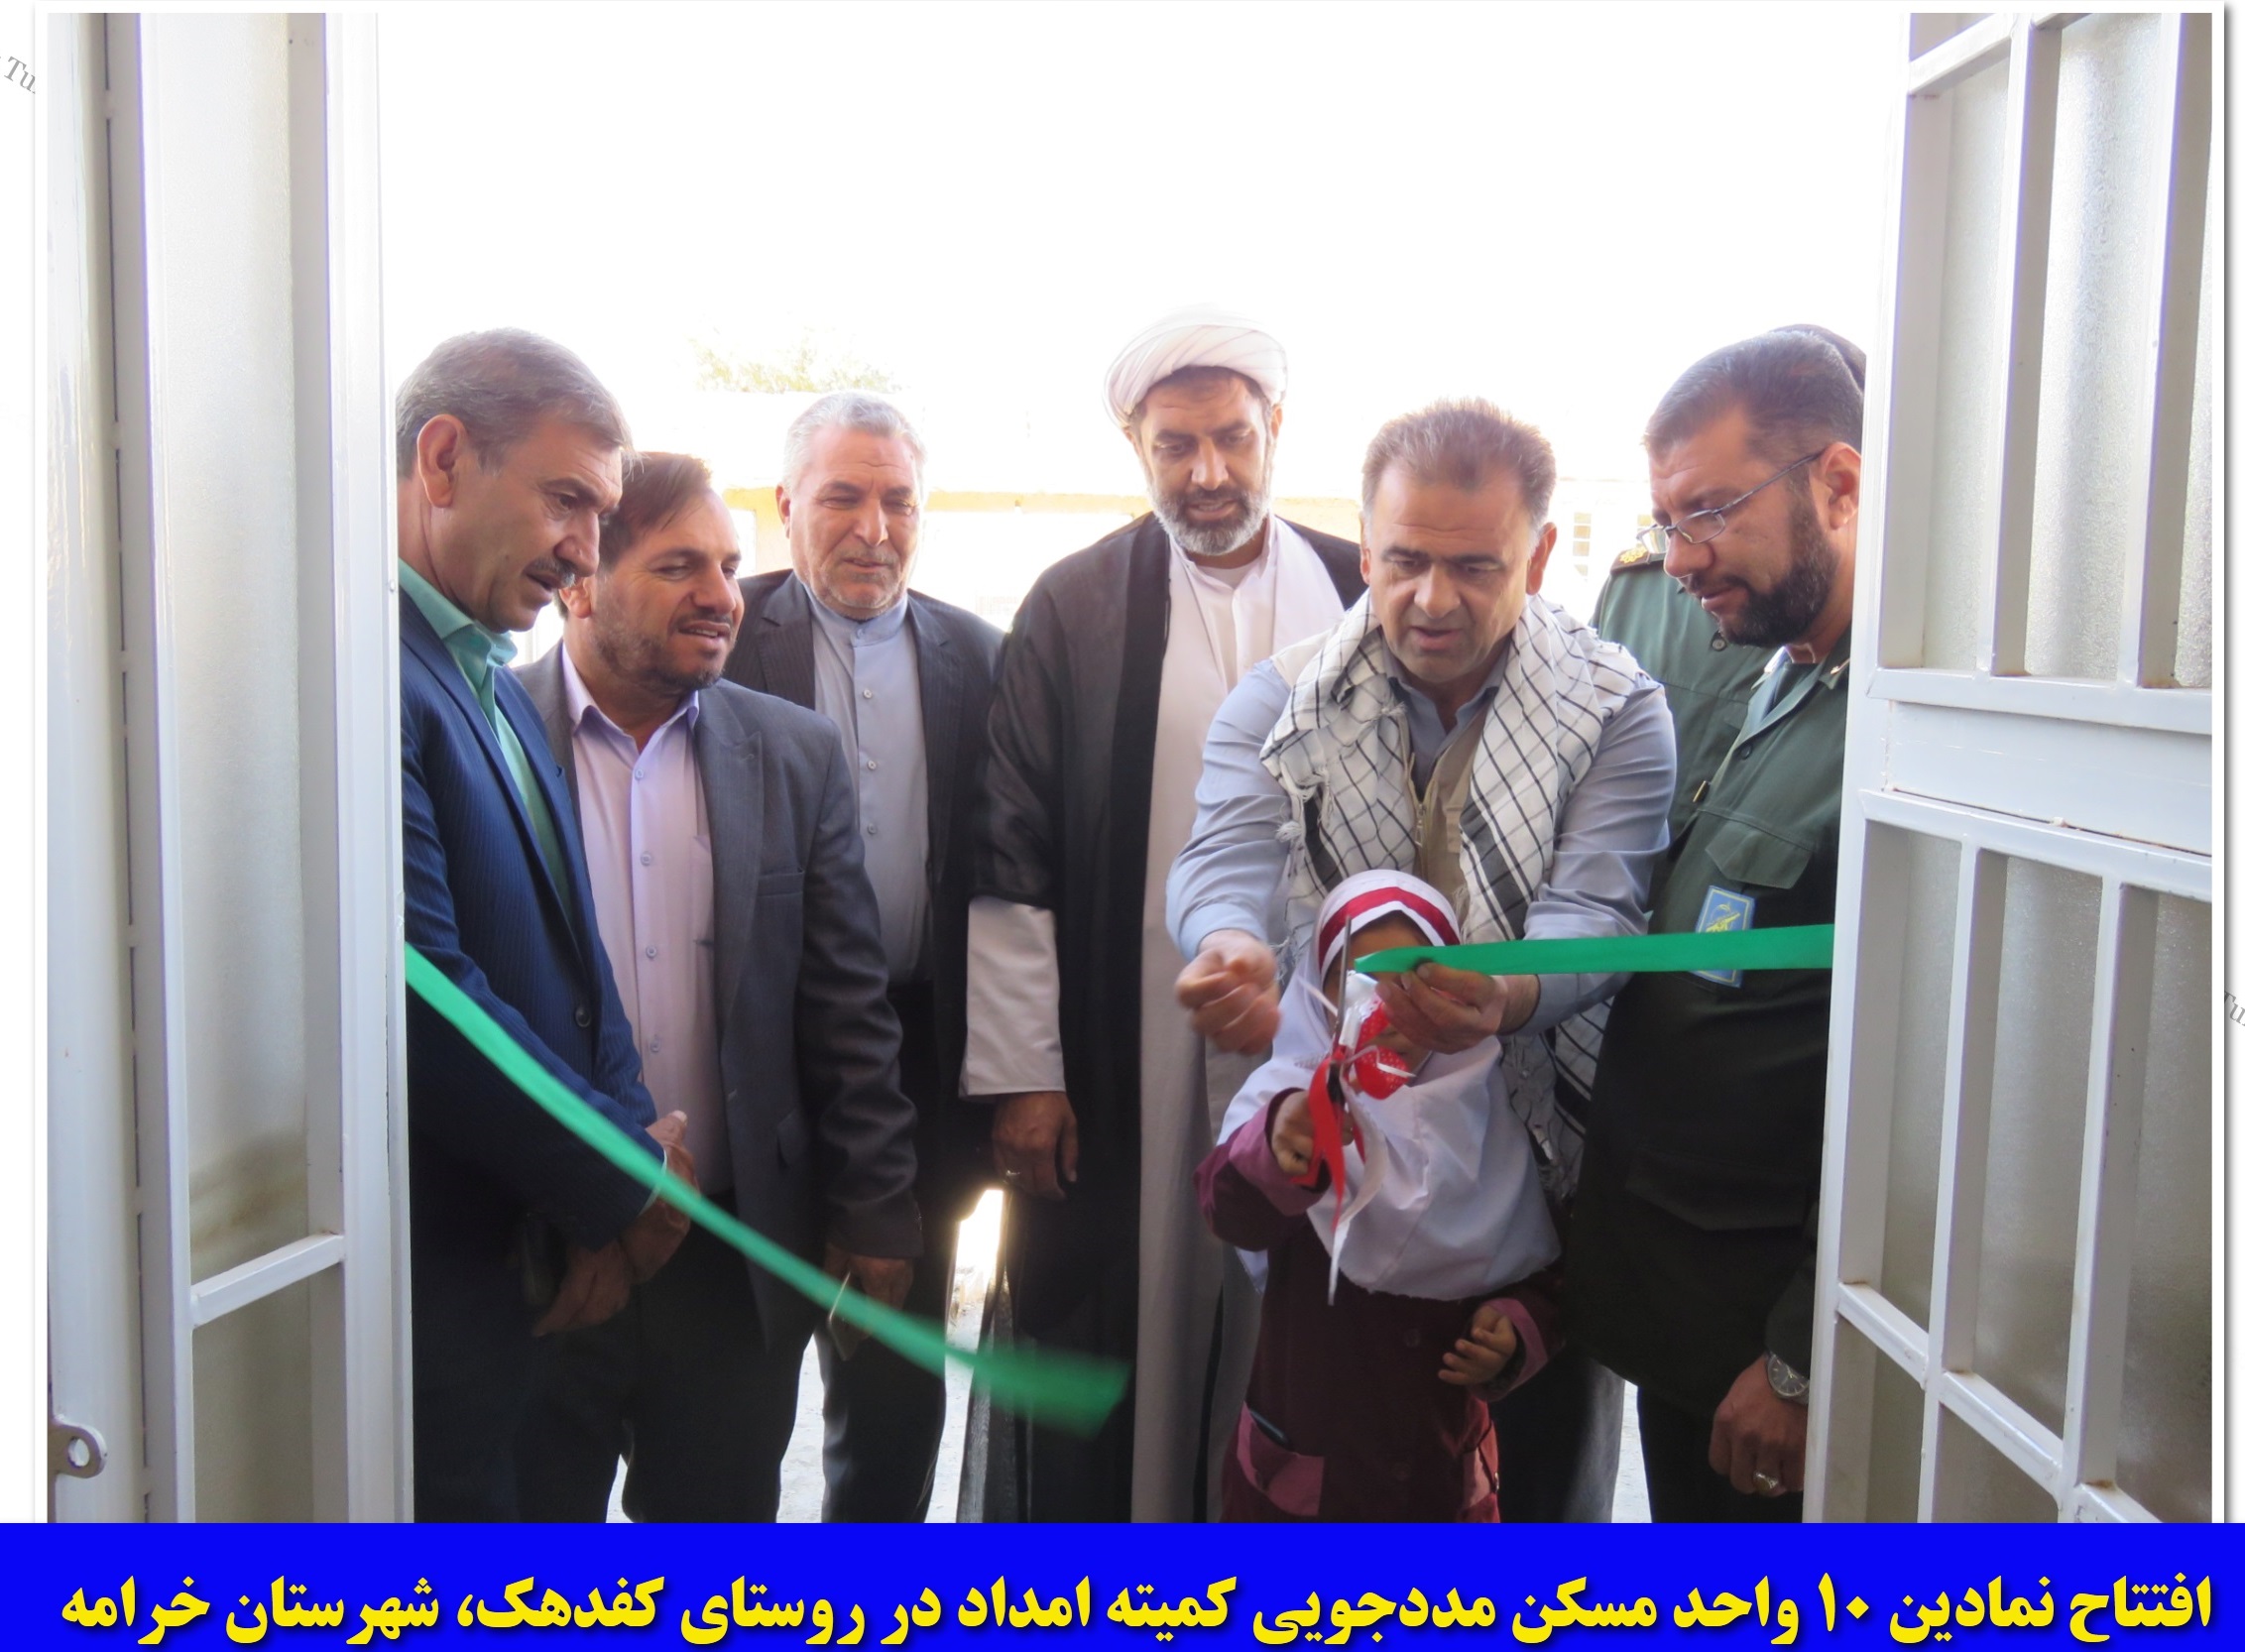 افتتاح ۱۰ واحد مسکن مددجویی کمیته امداد در شهرستان خرامه